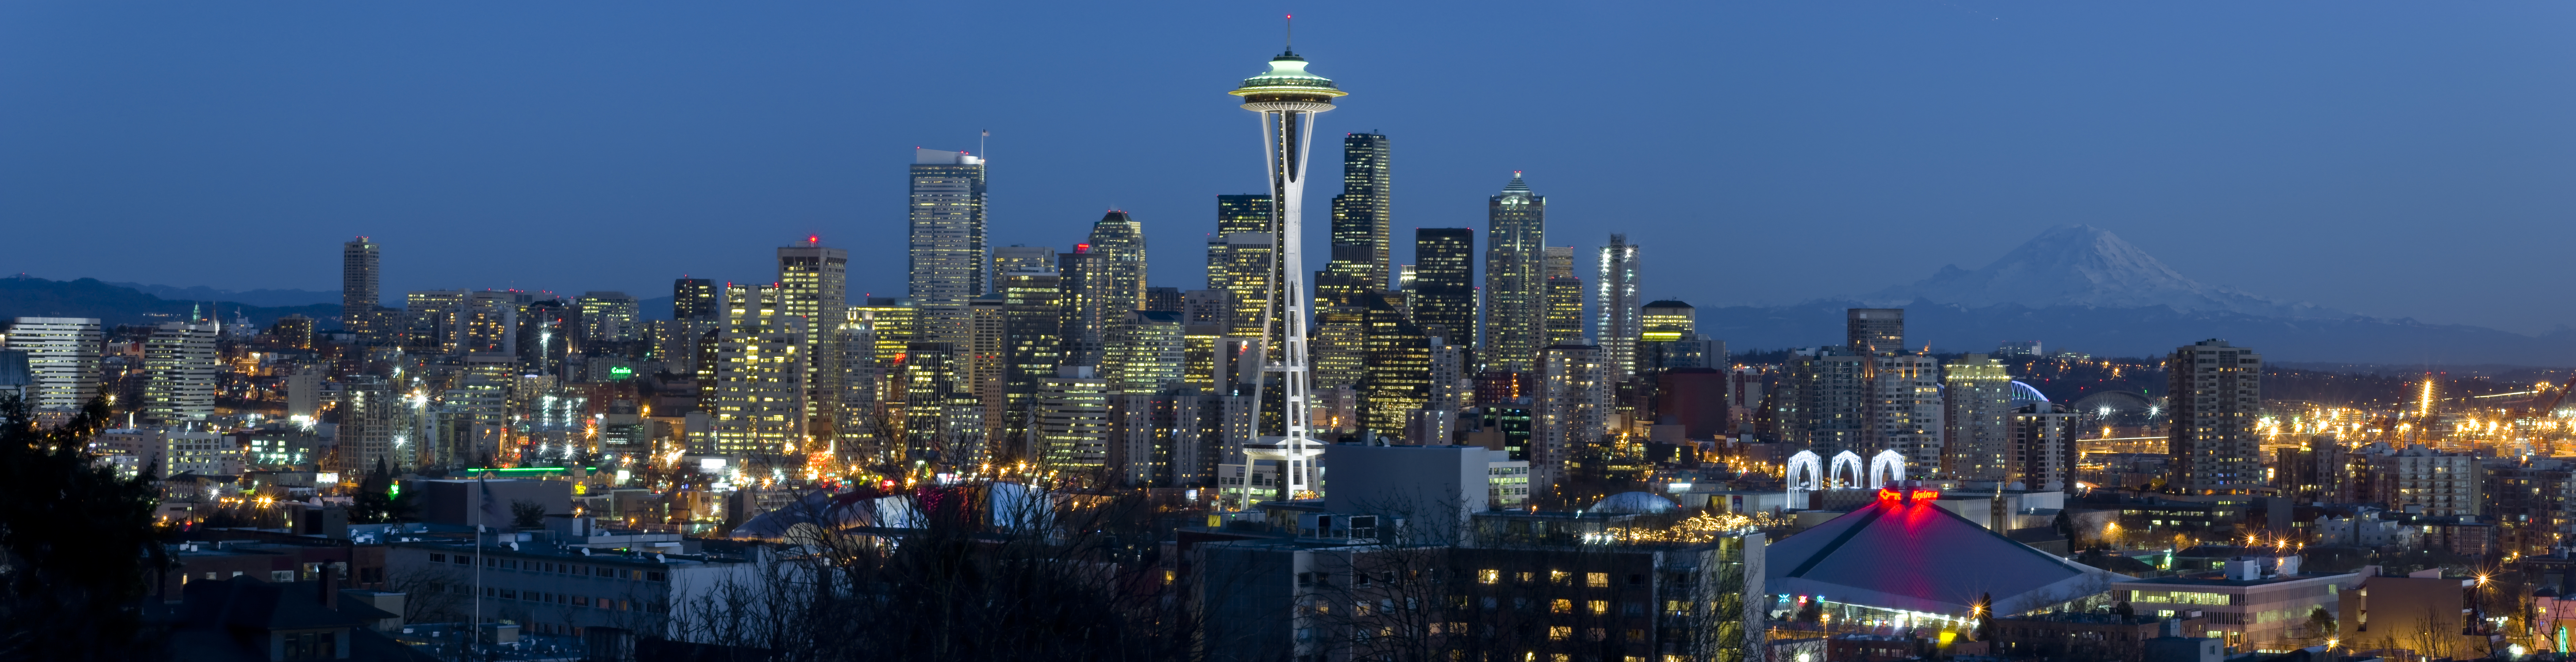 Epically High Res Seattle Skyline Shot 147 megapixels Nate